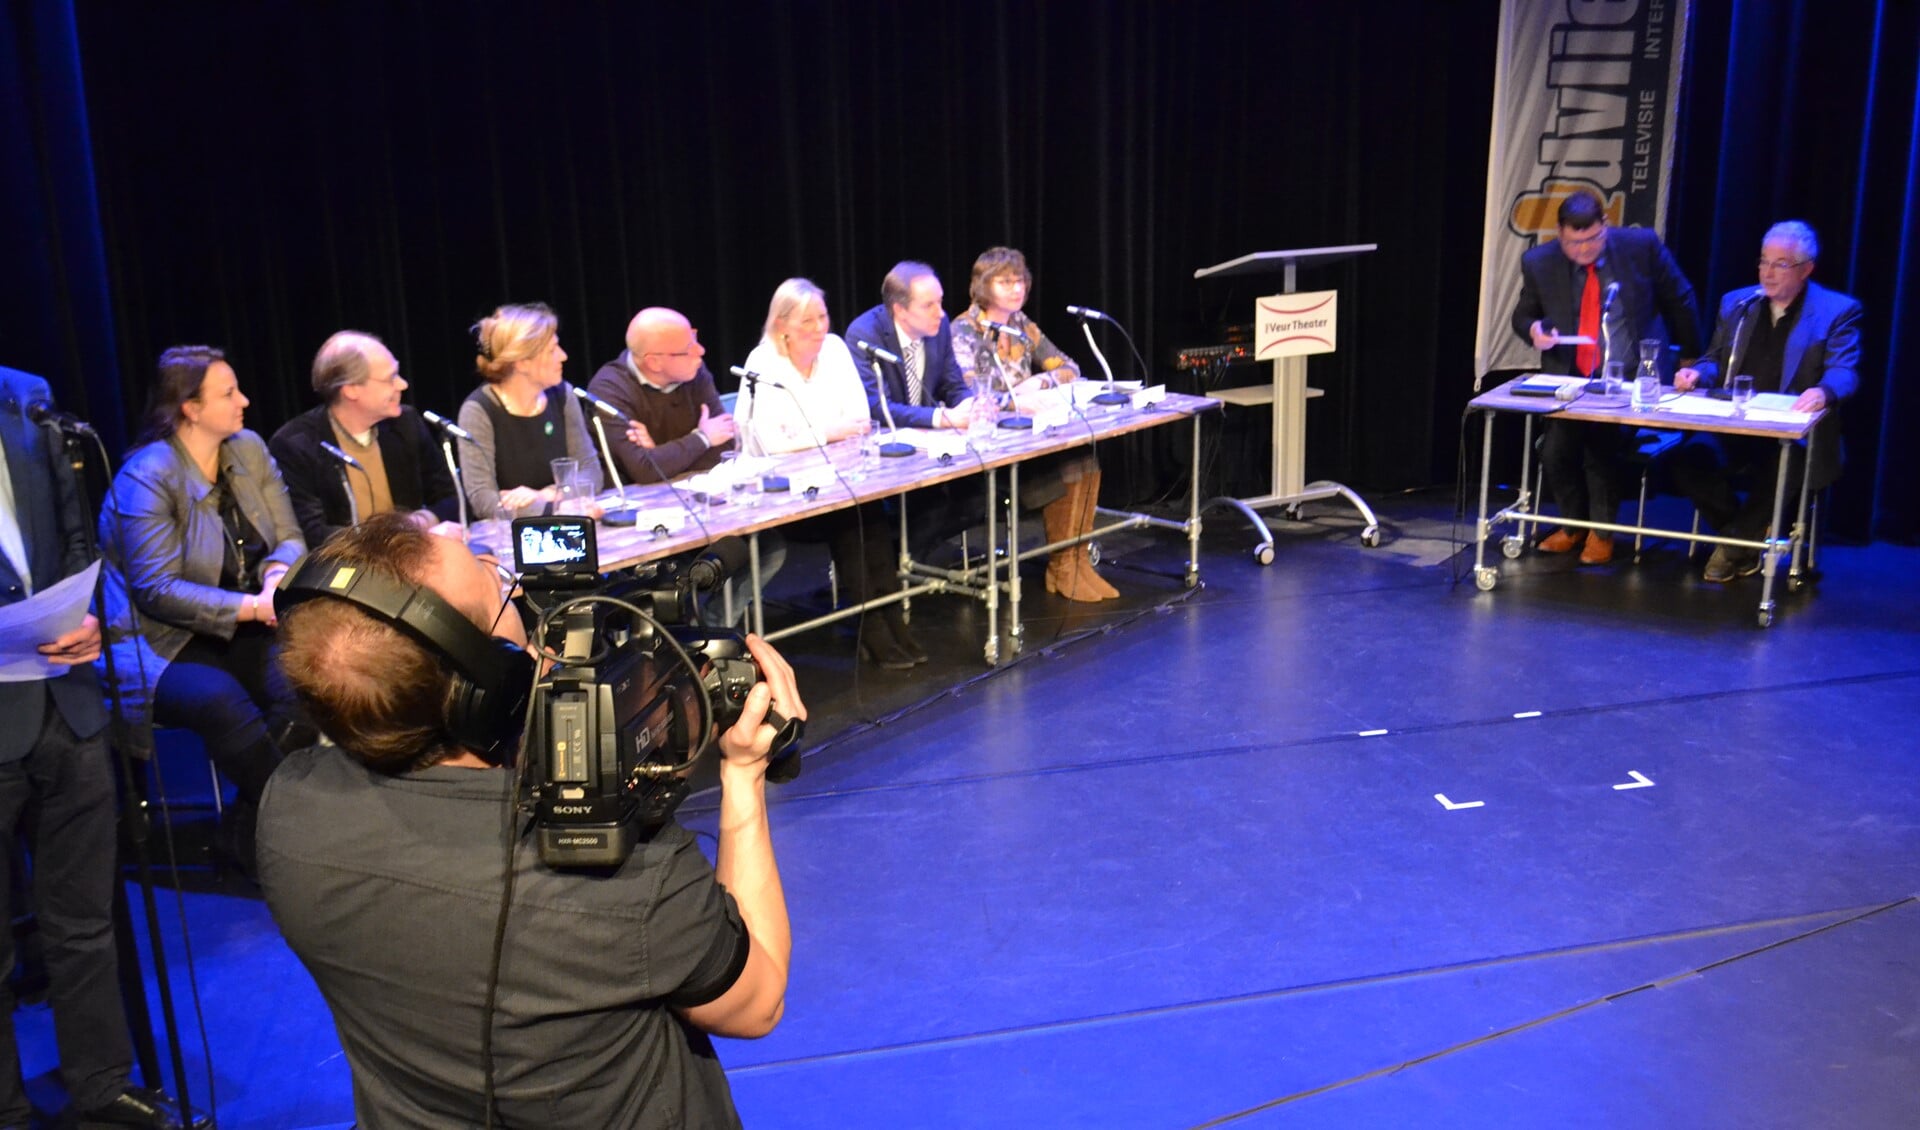 Tijdens het debat werden er opnamens gemaakt die live uitgezonden werden op Midvliet TV. (Foto: Inge koot)